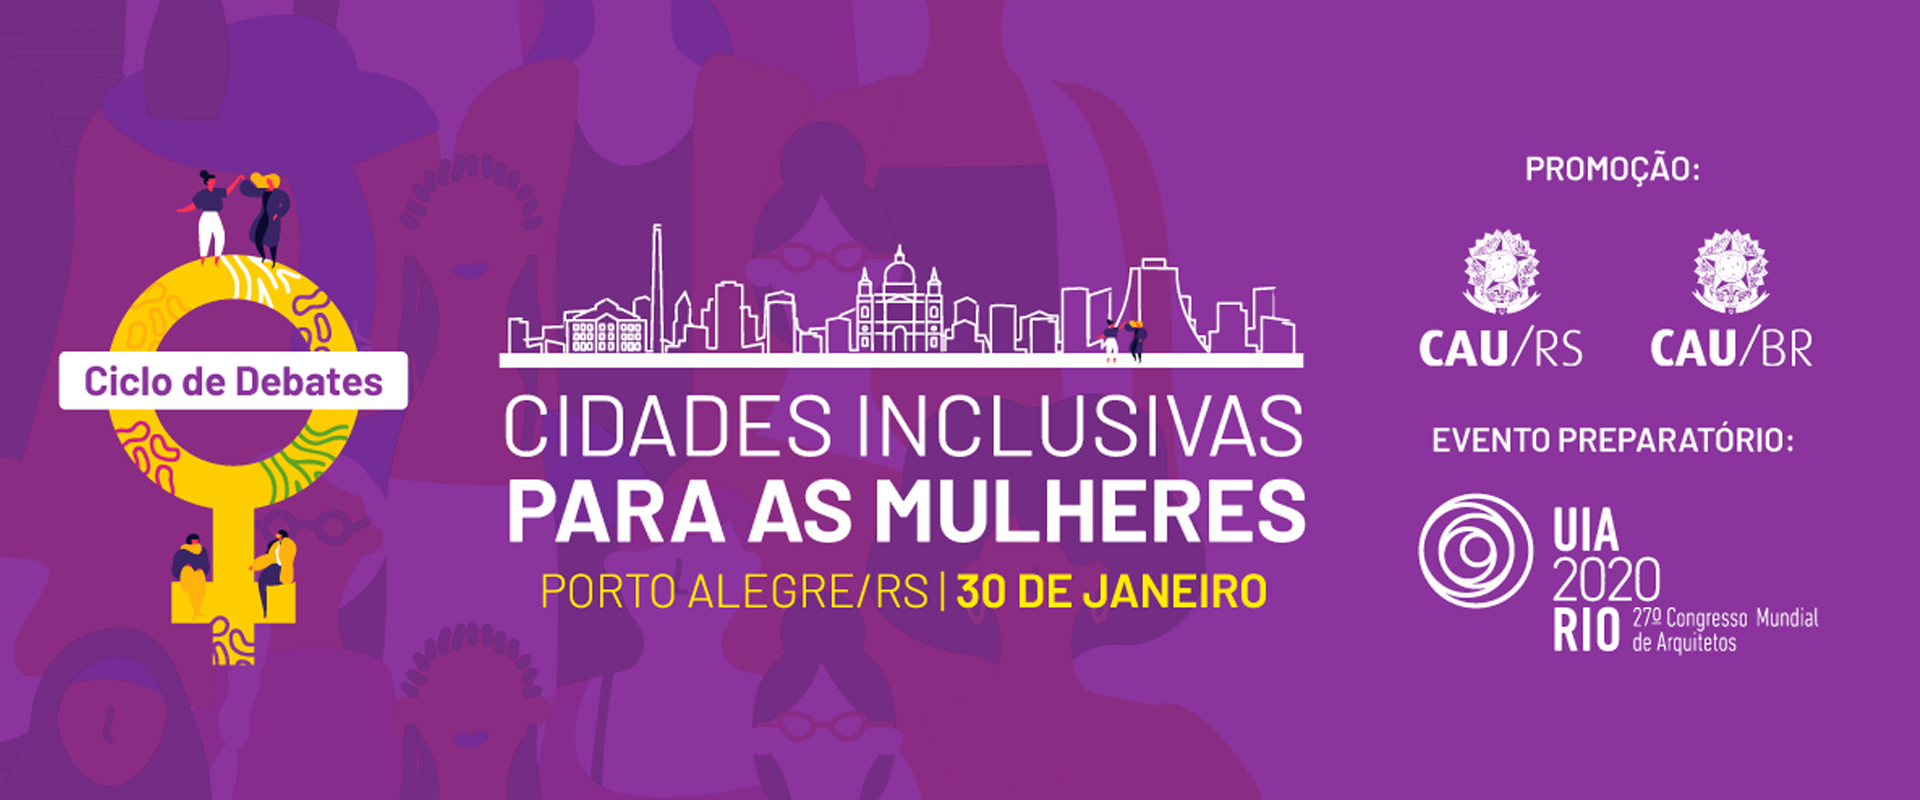 CAU/RS promove evento sobre cidades inclusivas para mulheres